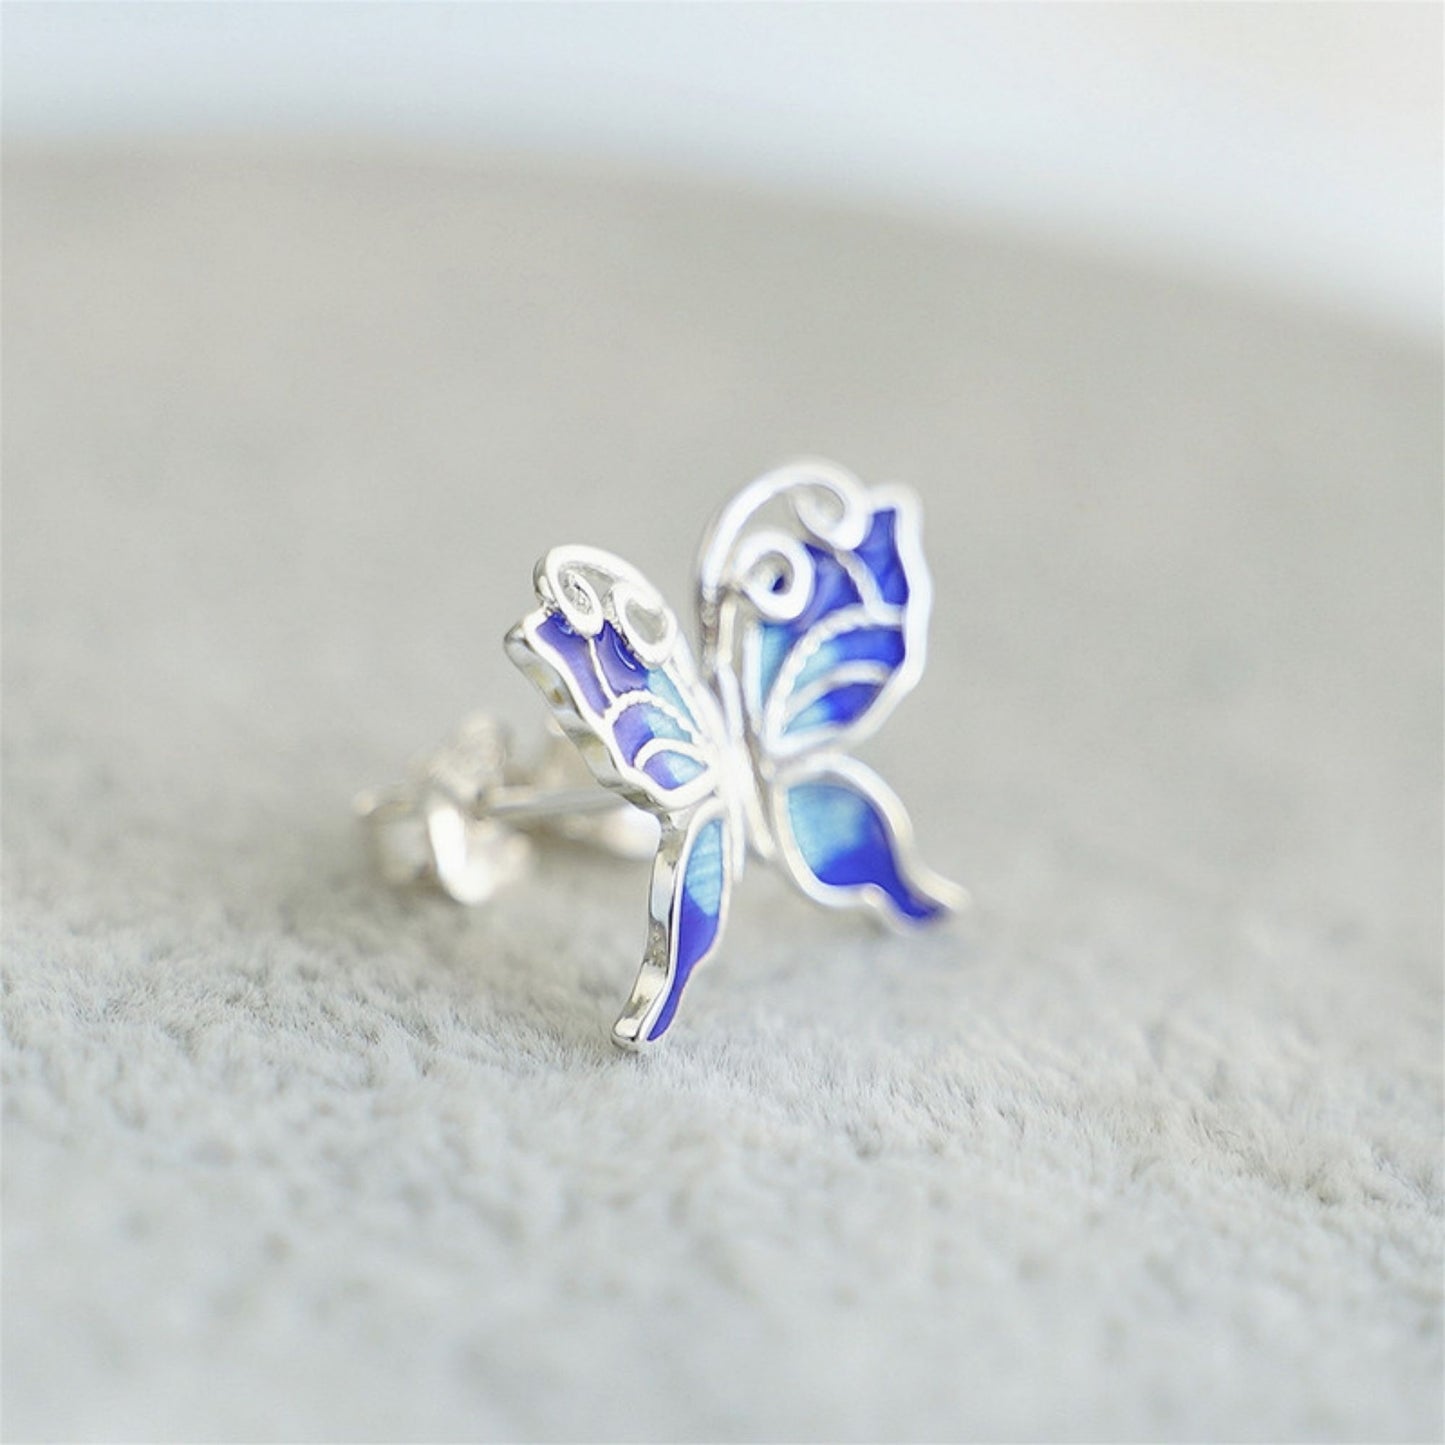 925 Sterling Silver Butterfly Wing Earrings with Blue Enamel for Butterfly lovers - sugarkittenlondon